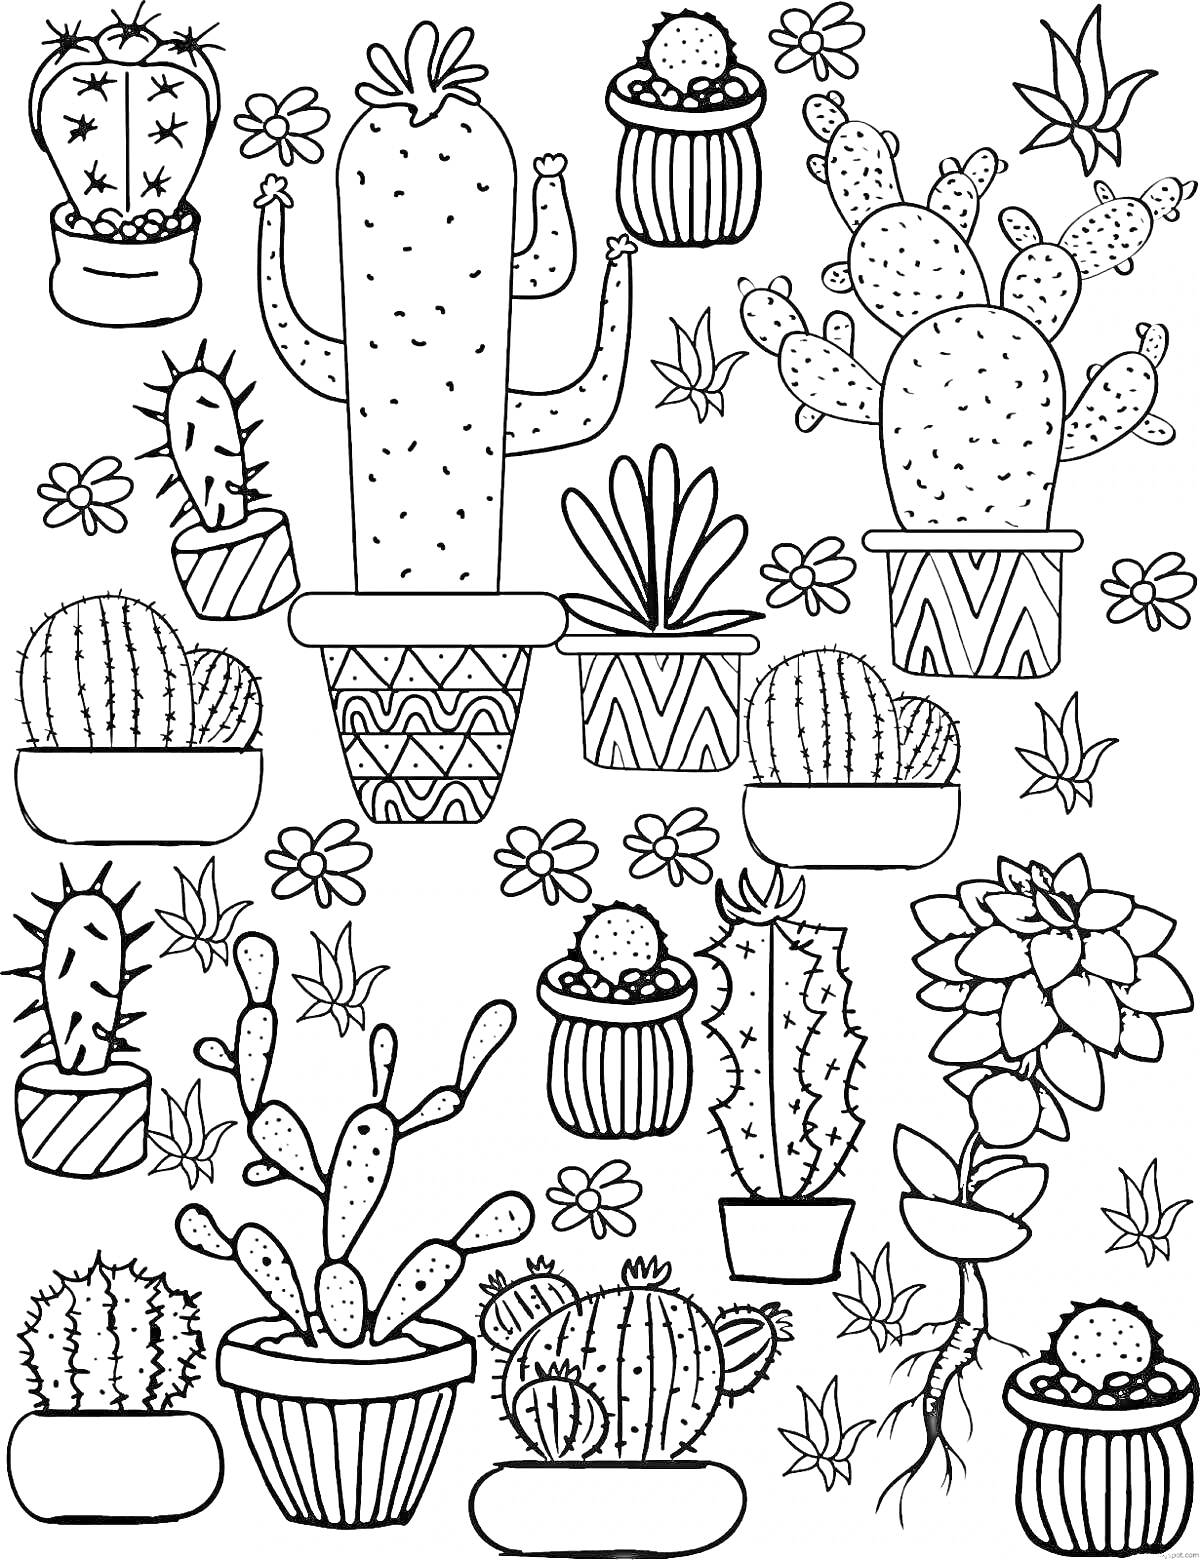 На раскраске изображено: Кактусы, Горшки, Растения, Цветы, Листья, Суккуленты, Комнатные растения, Узоры, Контурные рисунки